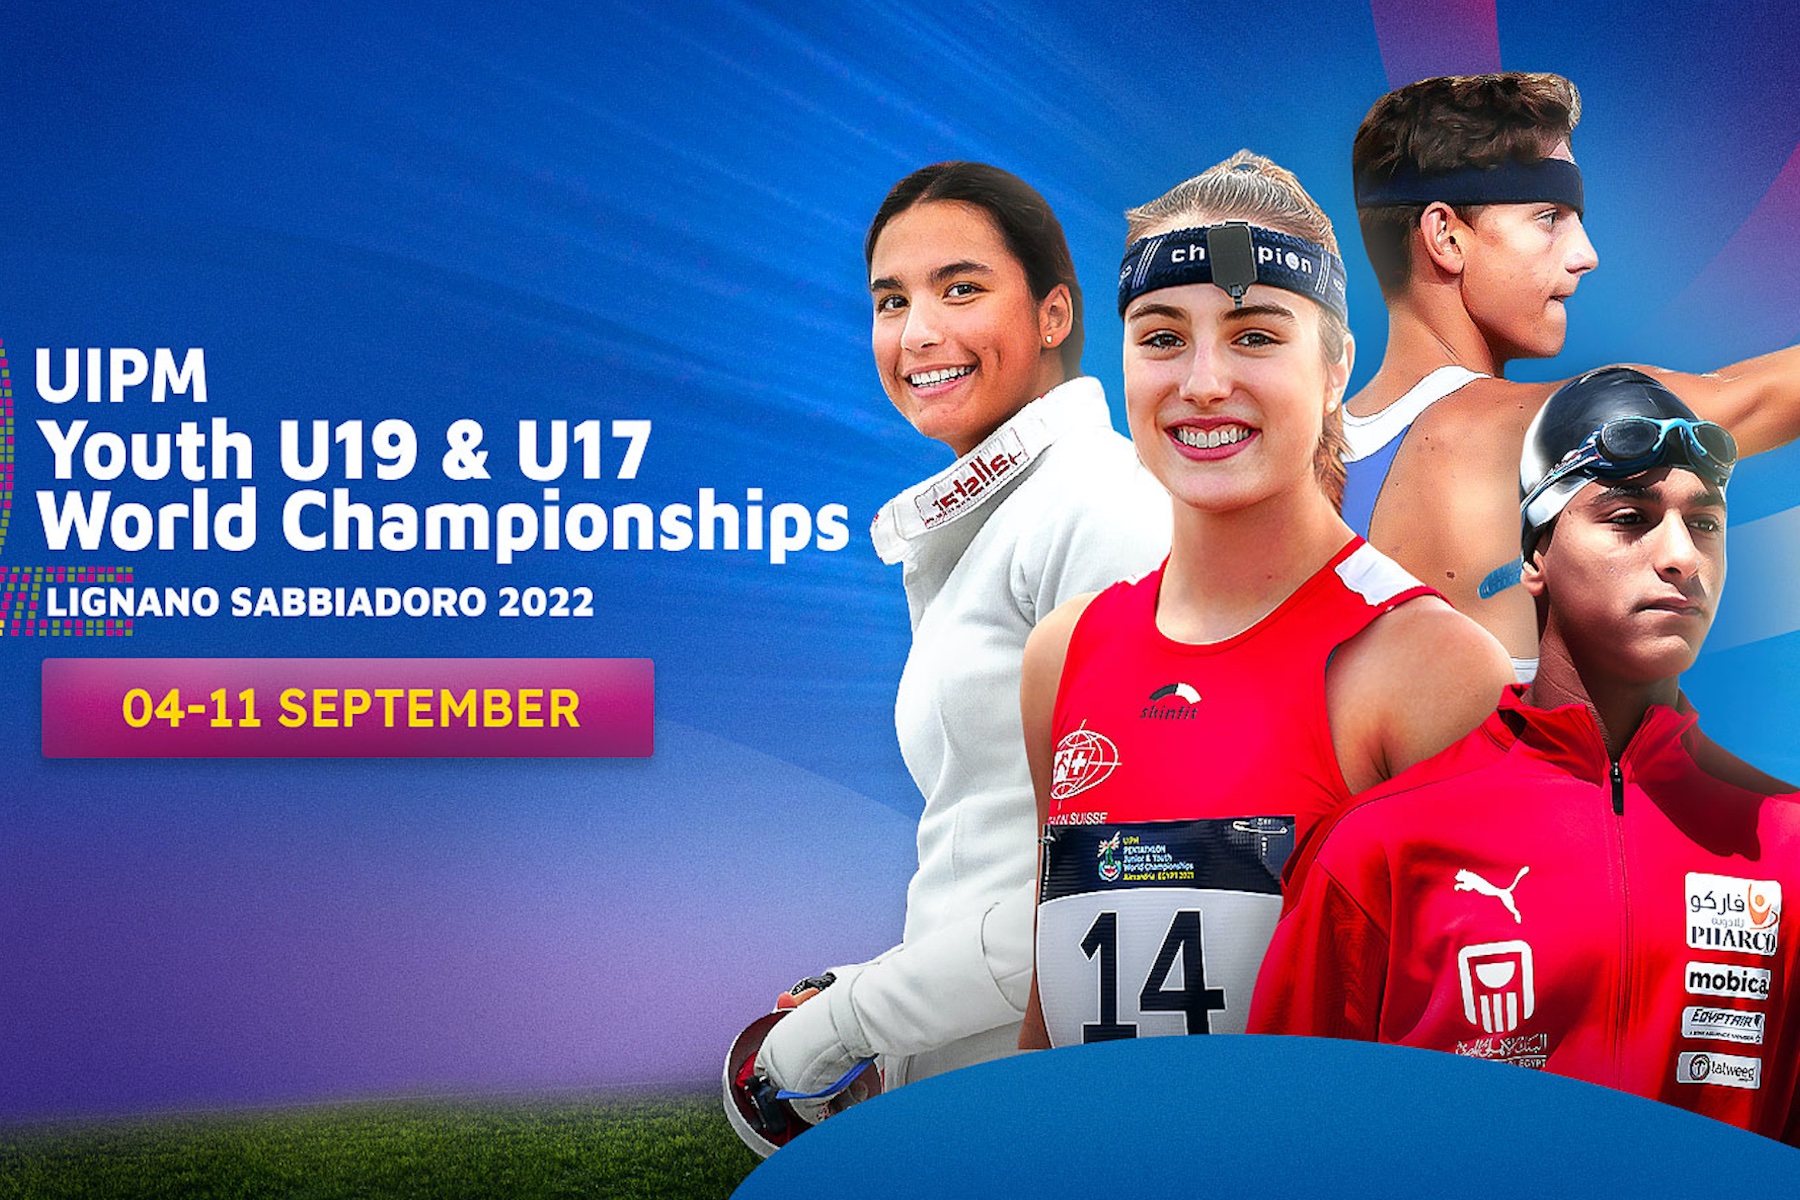 Tutto Pronto per gli “Uipm Youth U19 & U17 World Championships”, 34 Nazioni Iscritte e 250 Atleti, Elena Micheli Madrina della Manifestazione